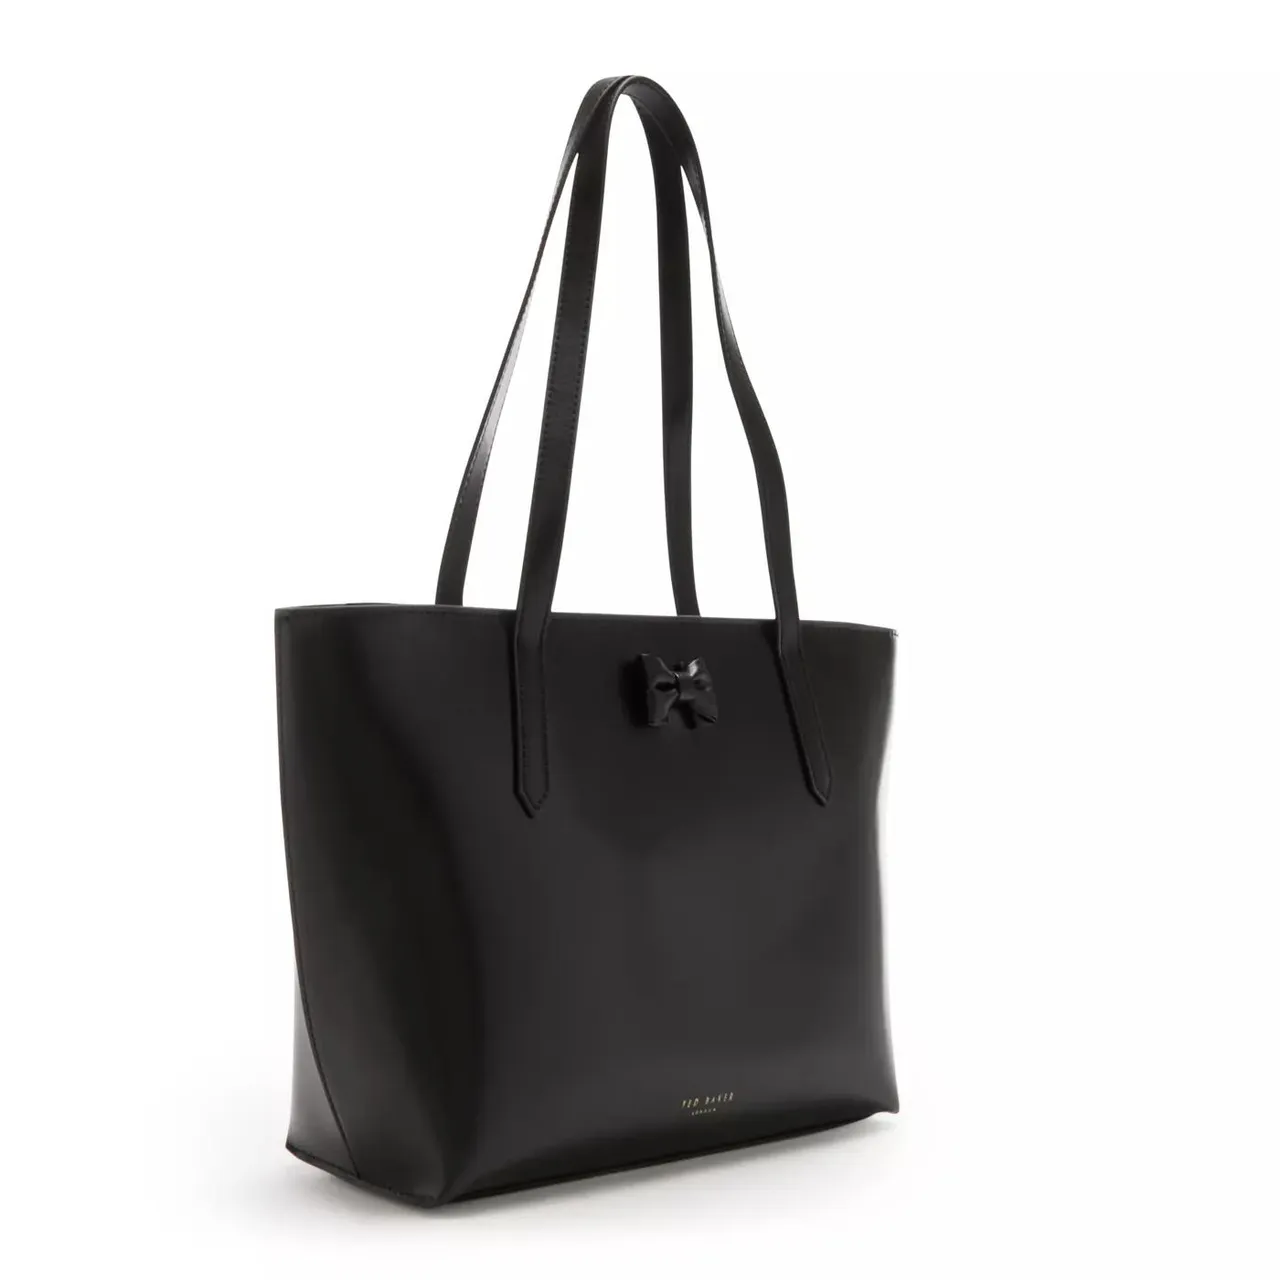 Ted Baker Shopping Bags - Ted Baker Beanne Schwarze Leder Shopper TB273995B - black - Shopping Bags for ladies